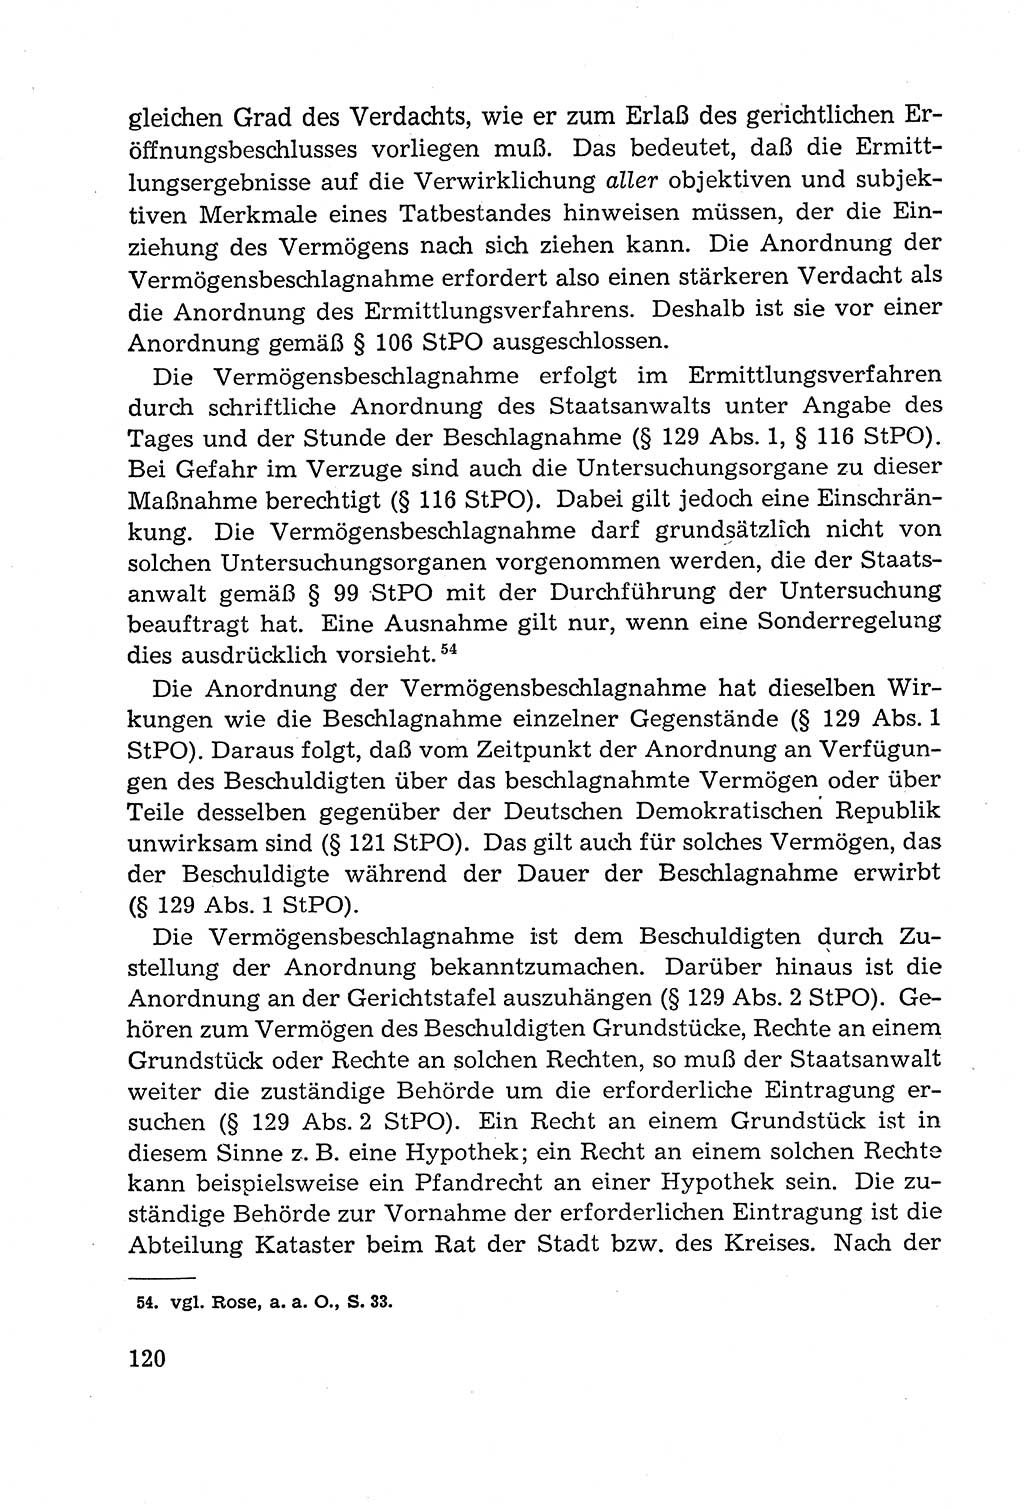 Leitfaden des Strafprozeßrechts der Deutschen Demokratischen Republik (DDR) 1959, Seite 120 (LF StPR DDR 1959, S. 120)